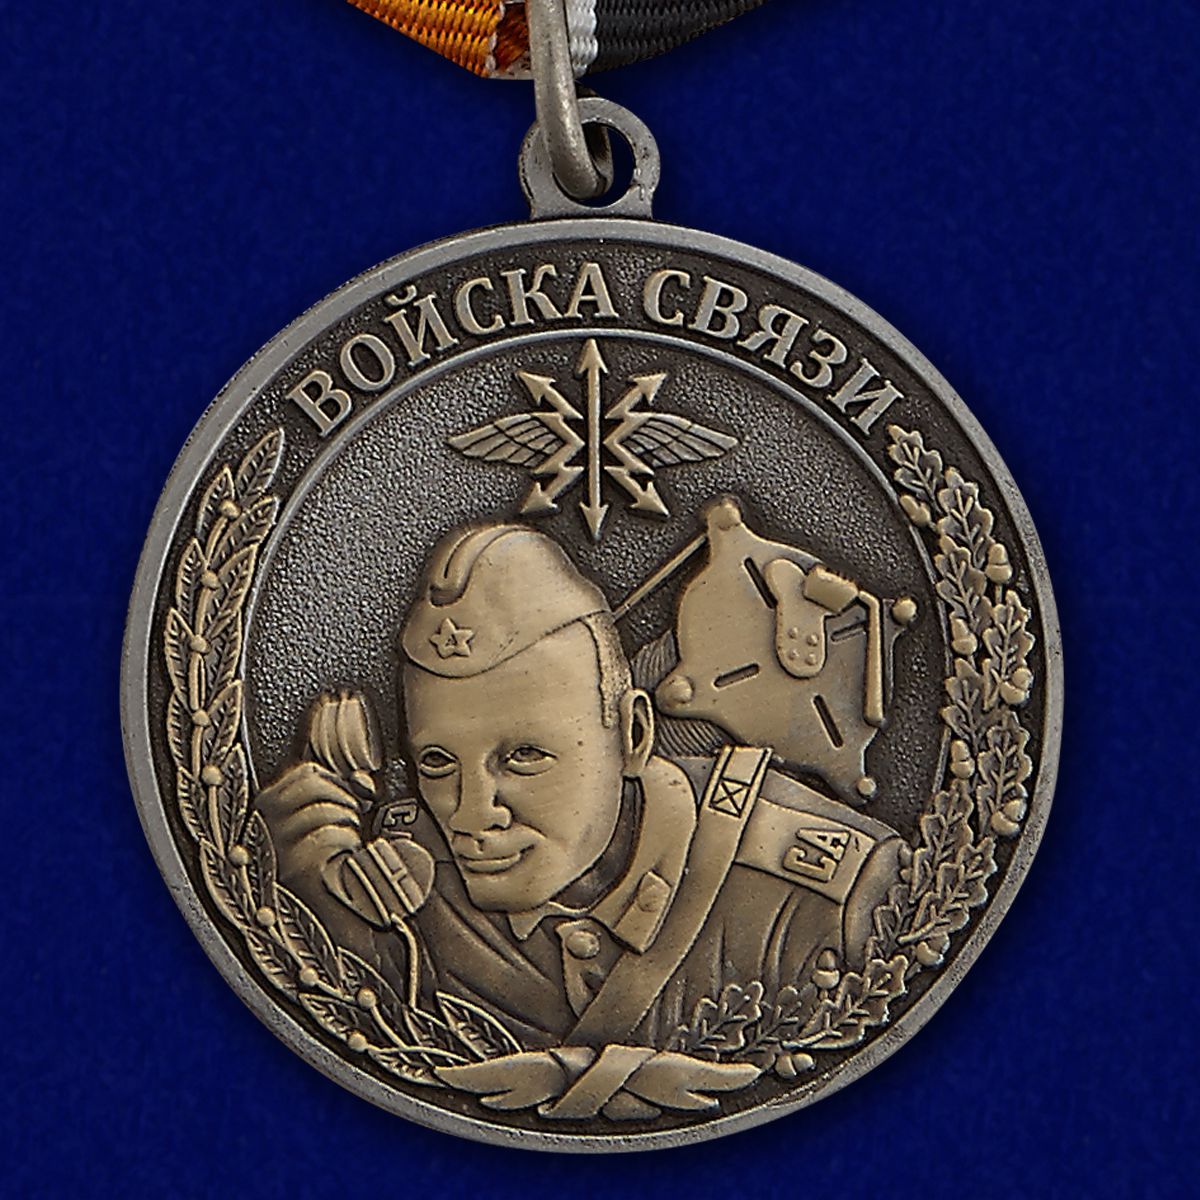 Медаль "Ветеран войск связи" в наградной коробке с удостоверением в комплекте 